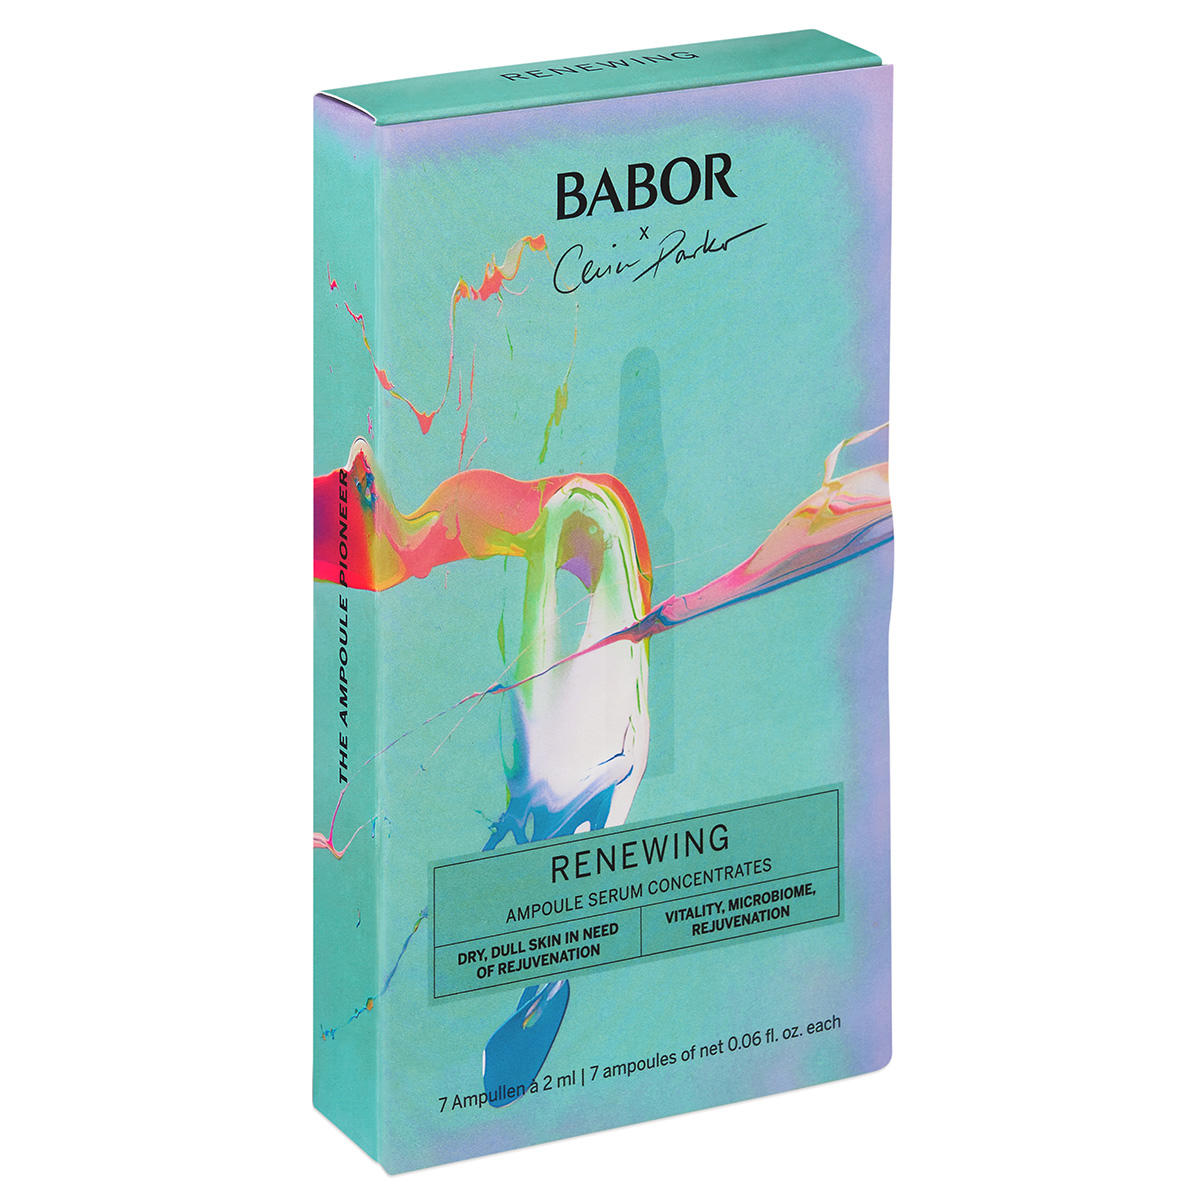 BABOR AMPOULE CONCENTRATES Ampolla Renovadora Edición Limitada 7 x 2 ml - 2